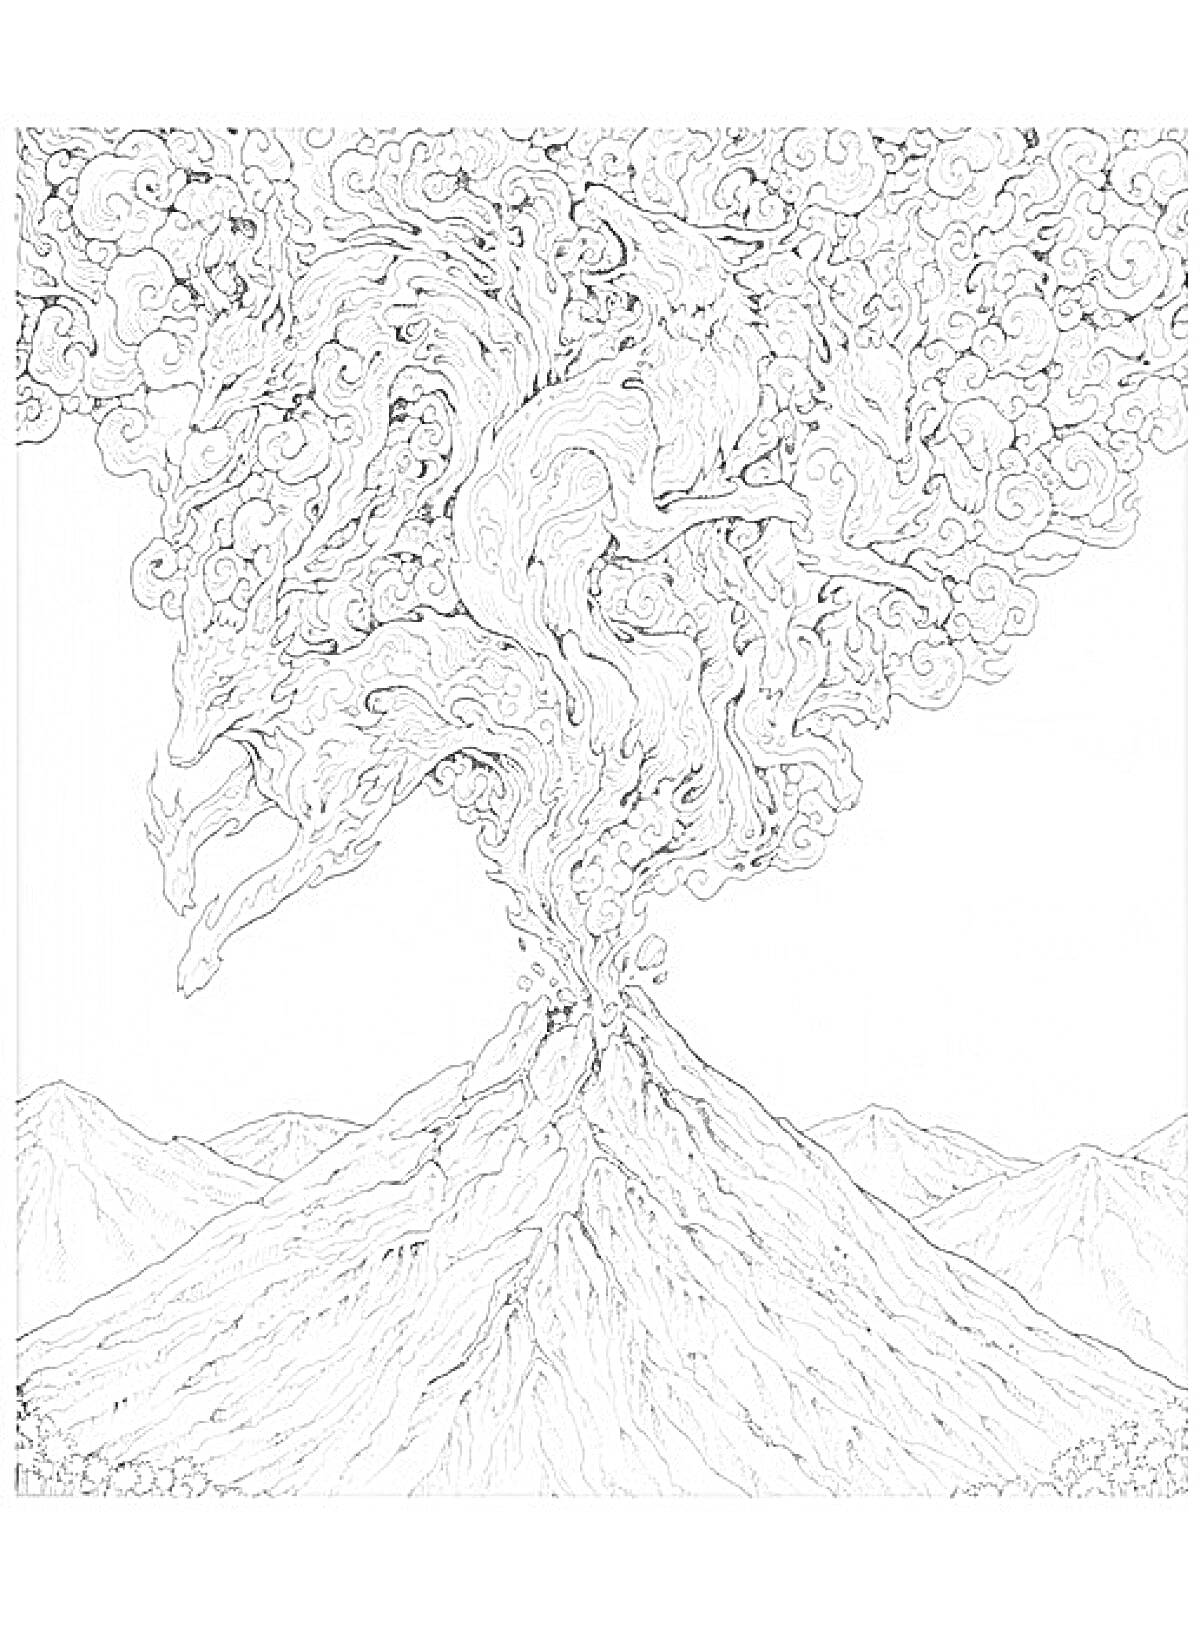 Раскраска Извержение вулкана с фигурами животных в облаке дыма на фоне гор